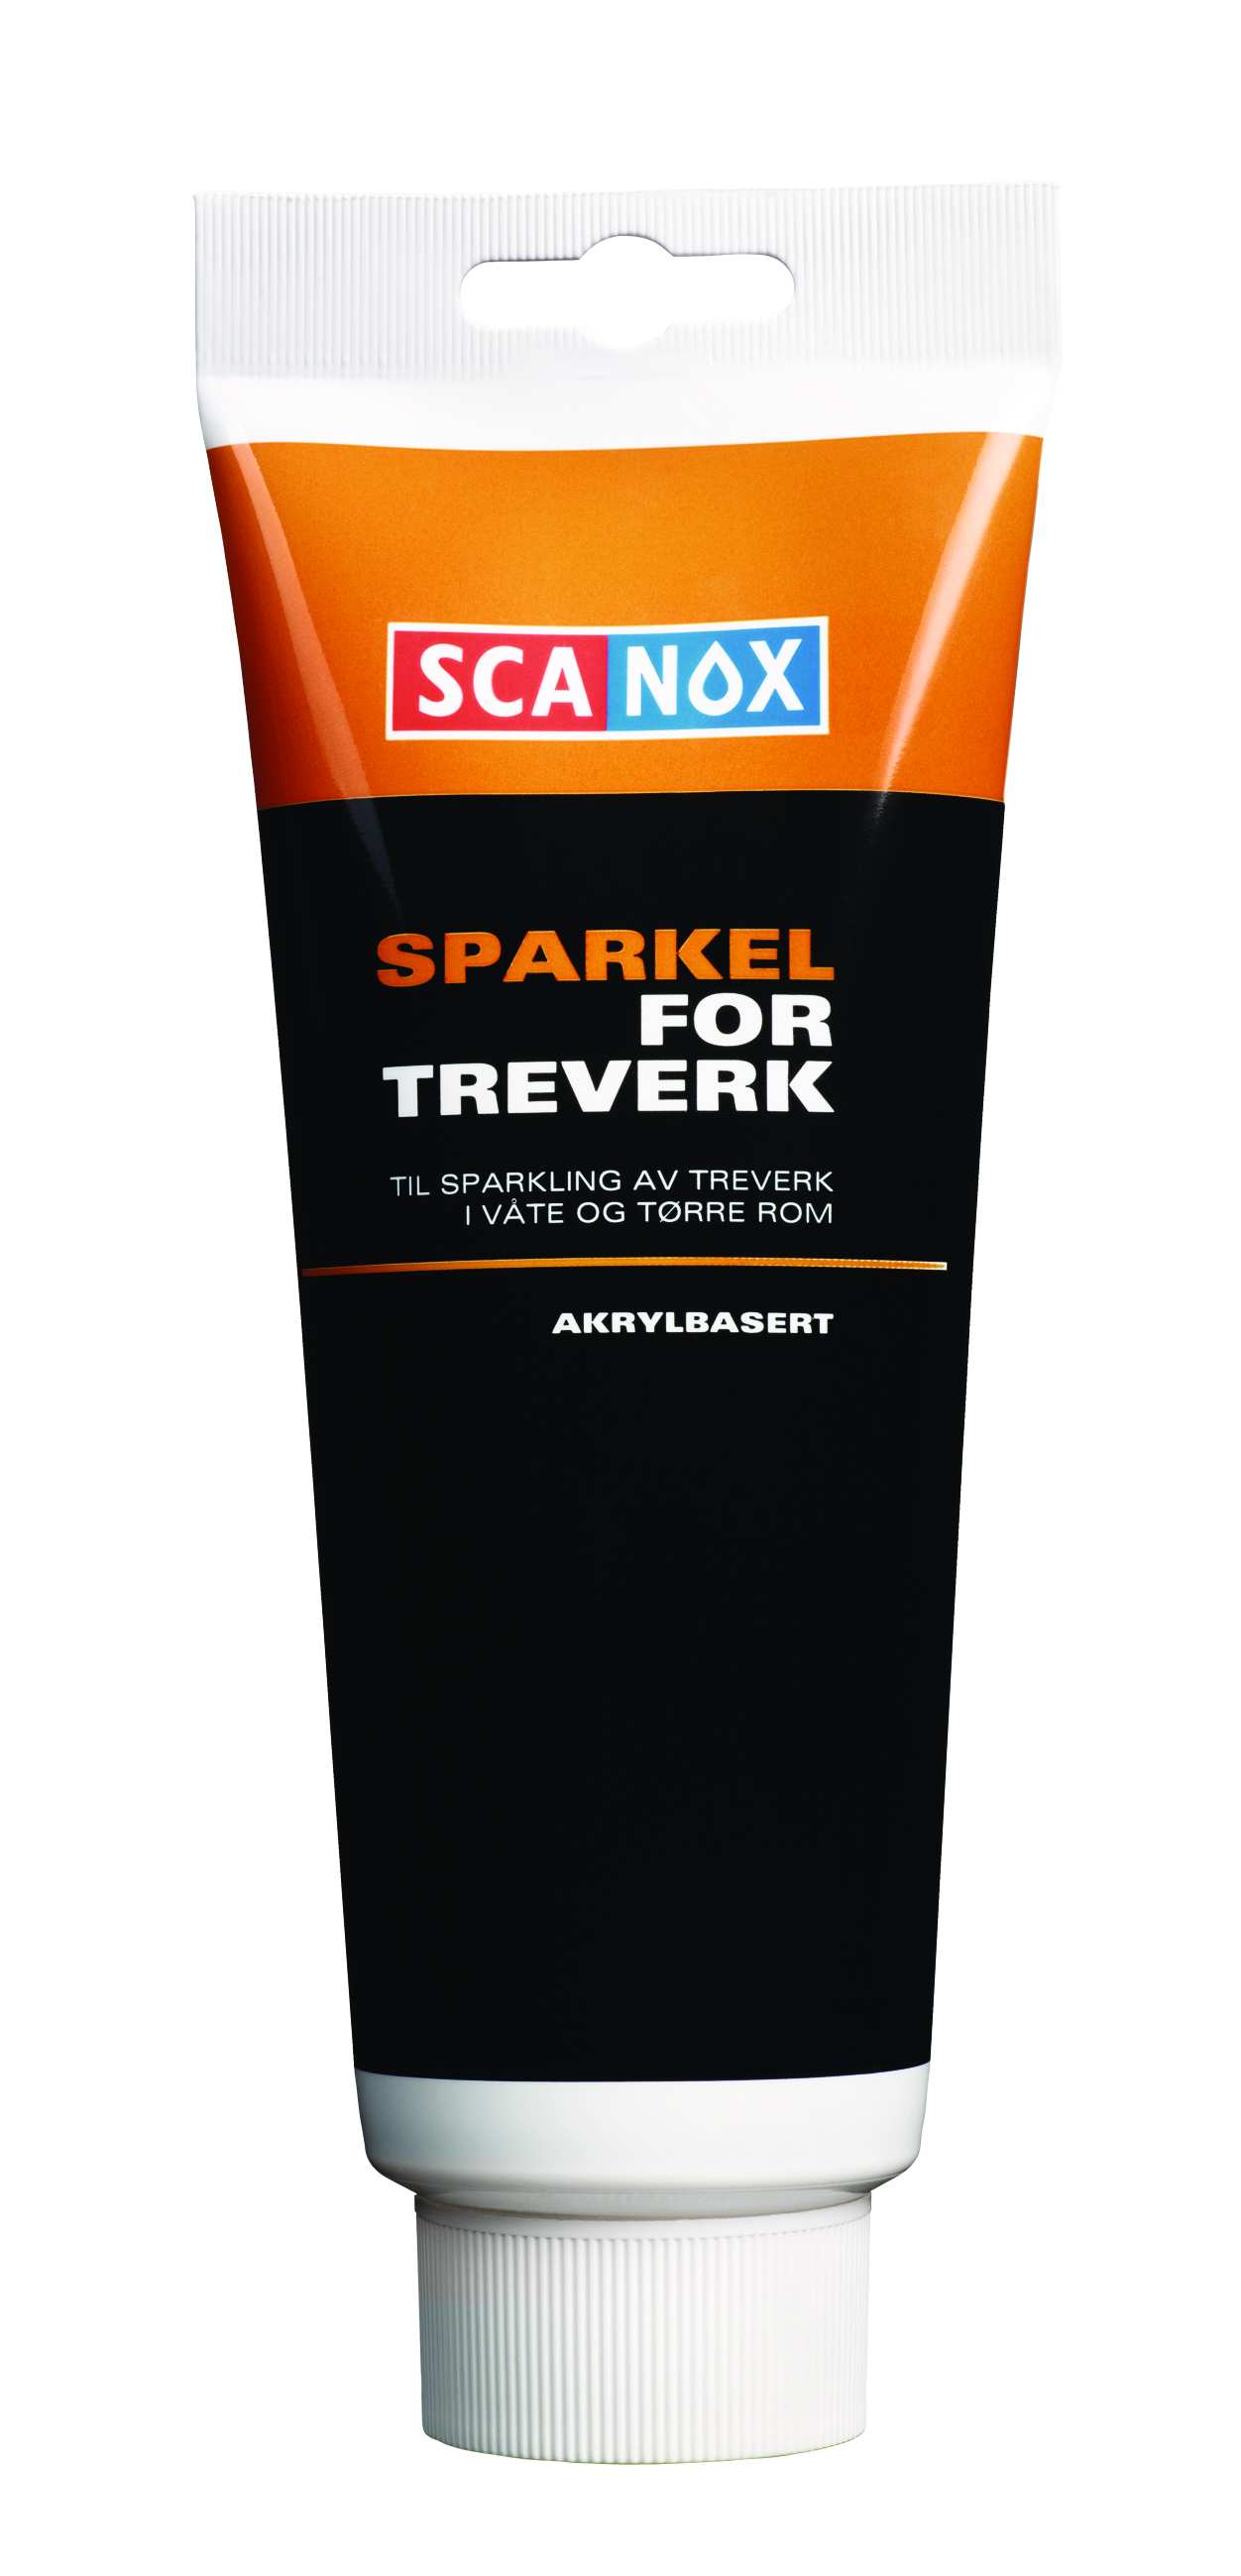 Scanox Sparkel for treverk